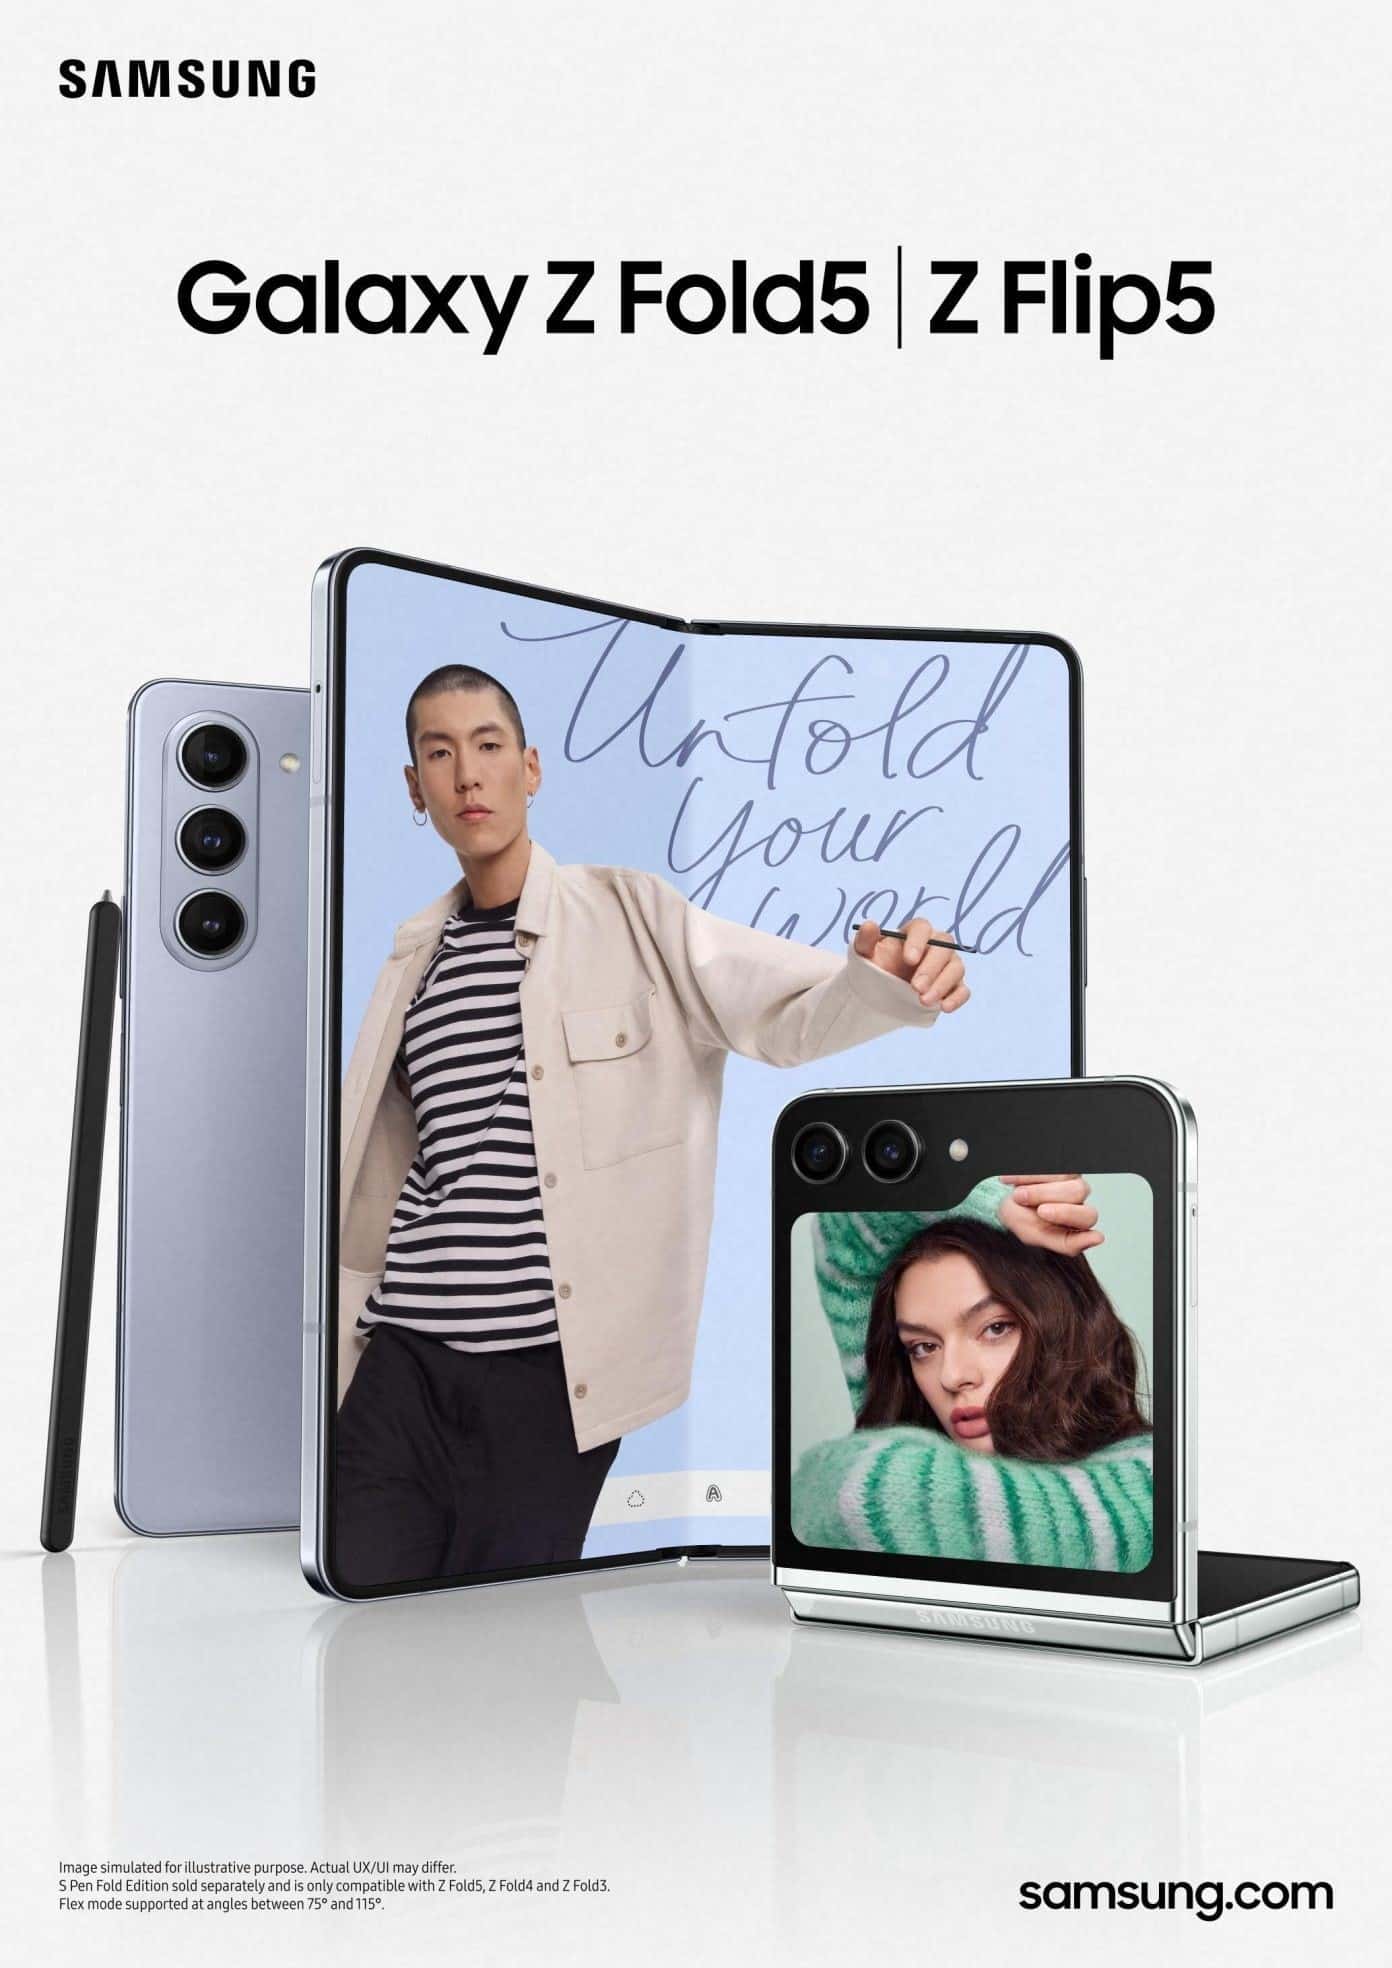 Galaxy Z Flip5 and Z Fold5.